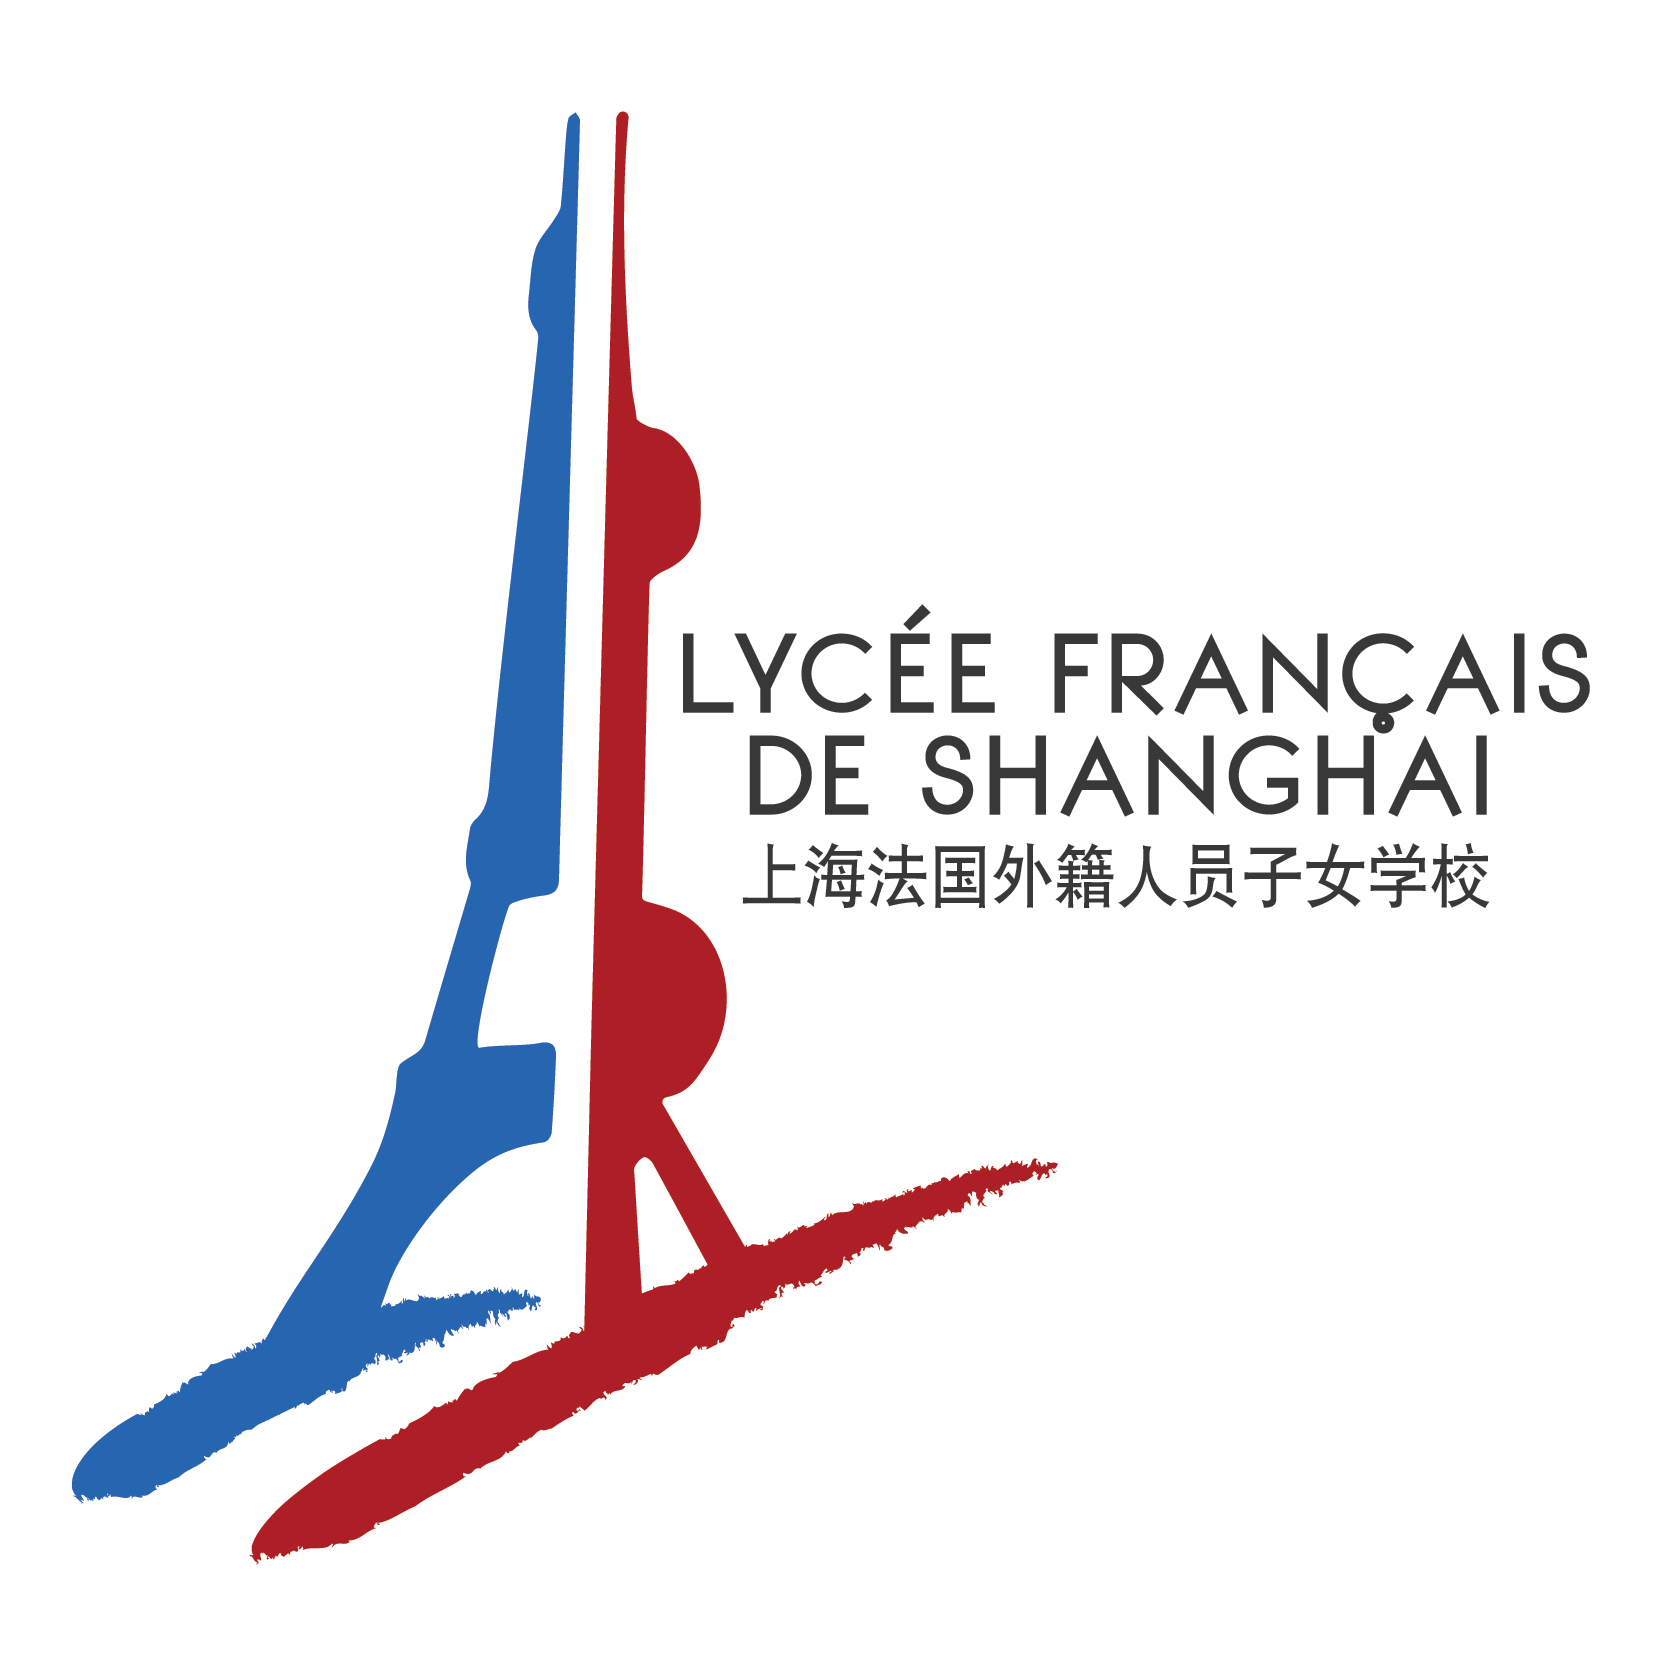 Shanghai French School